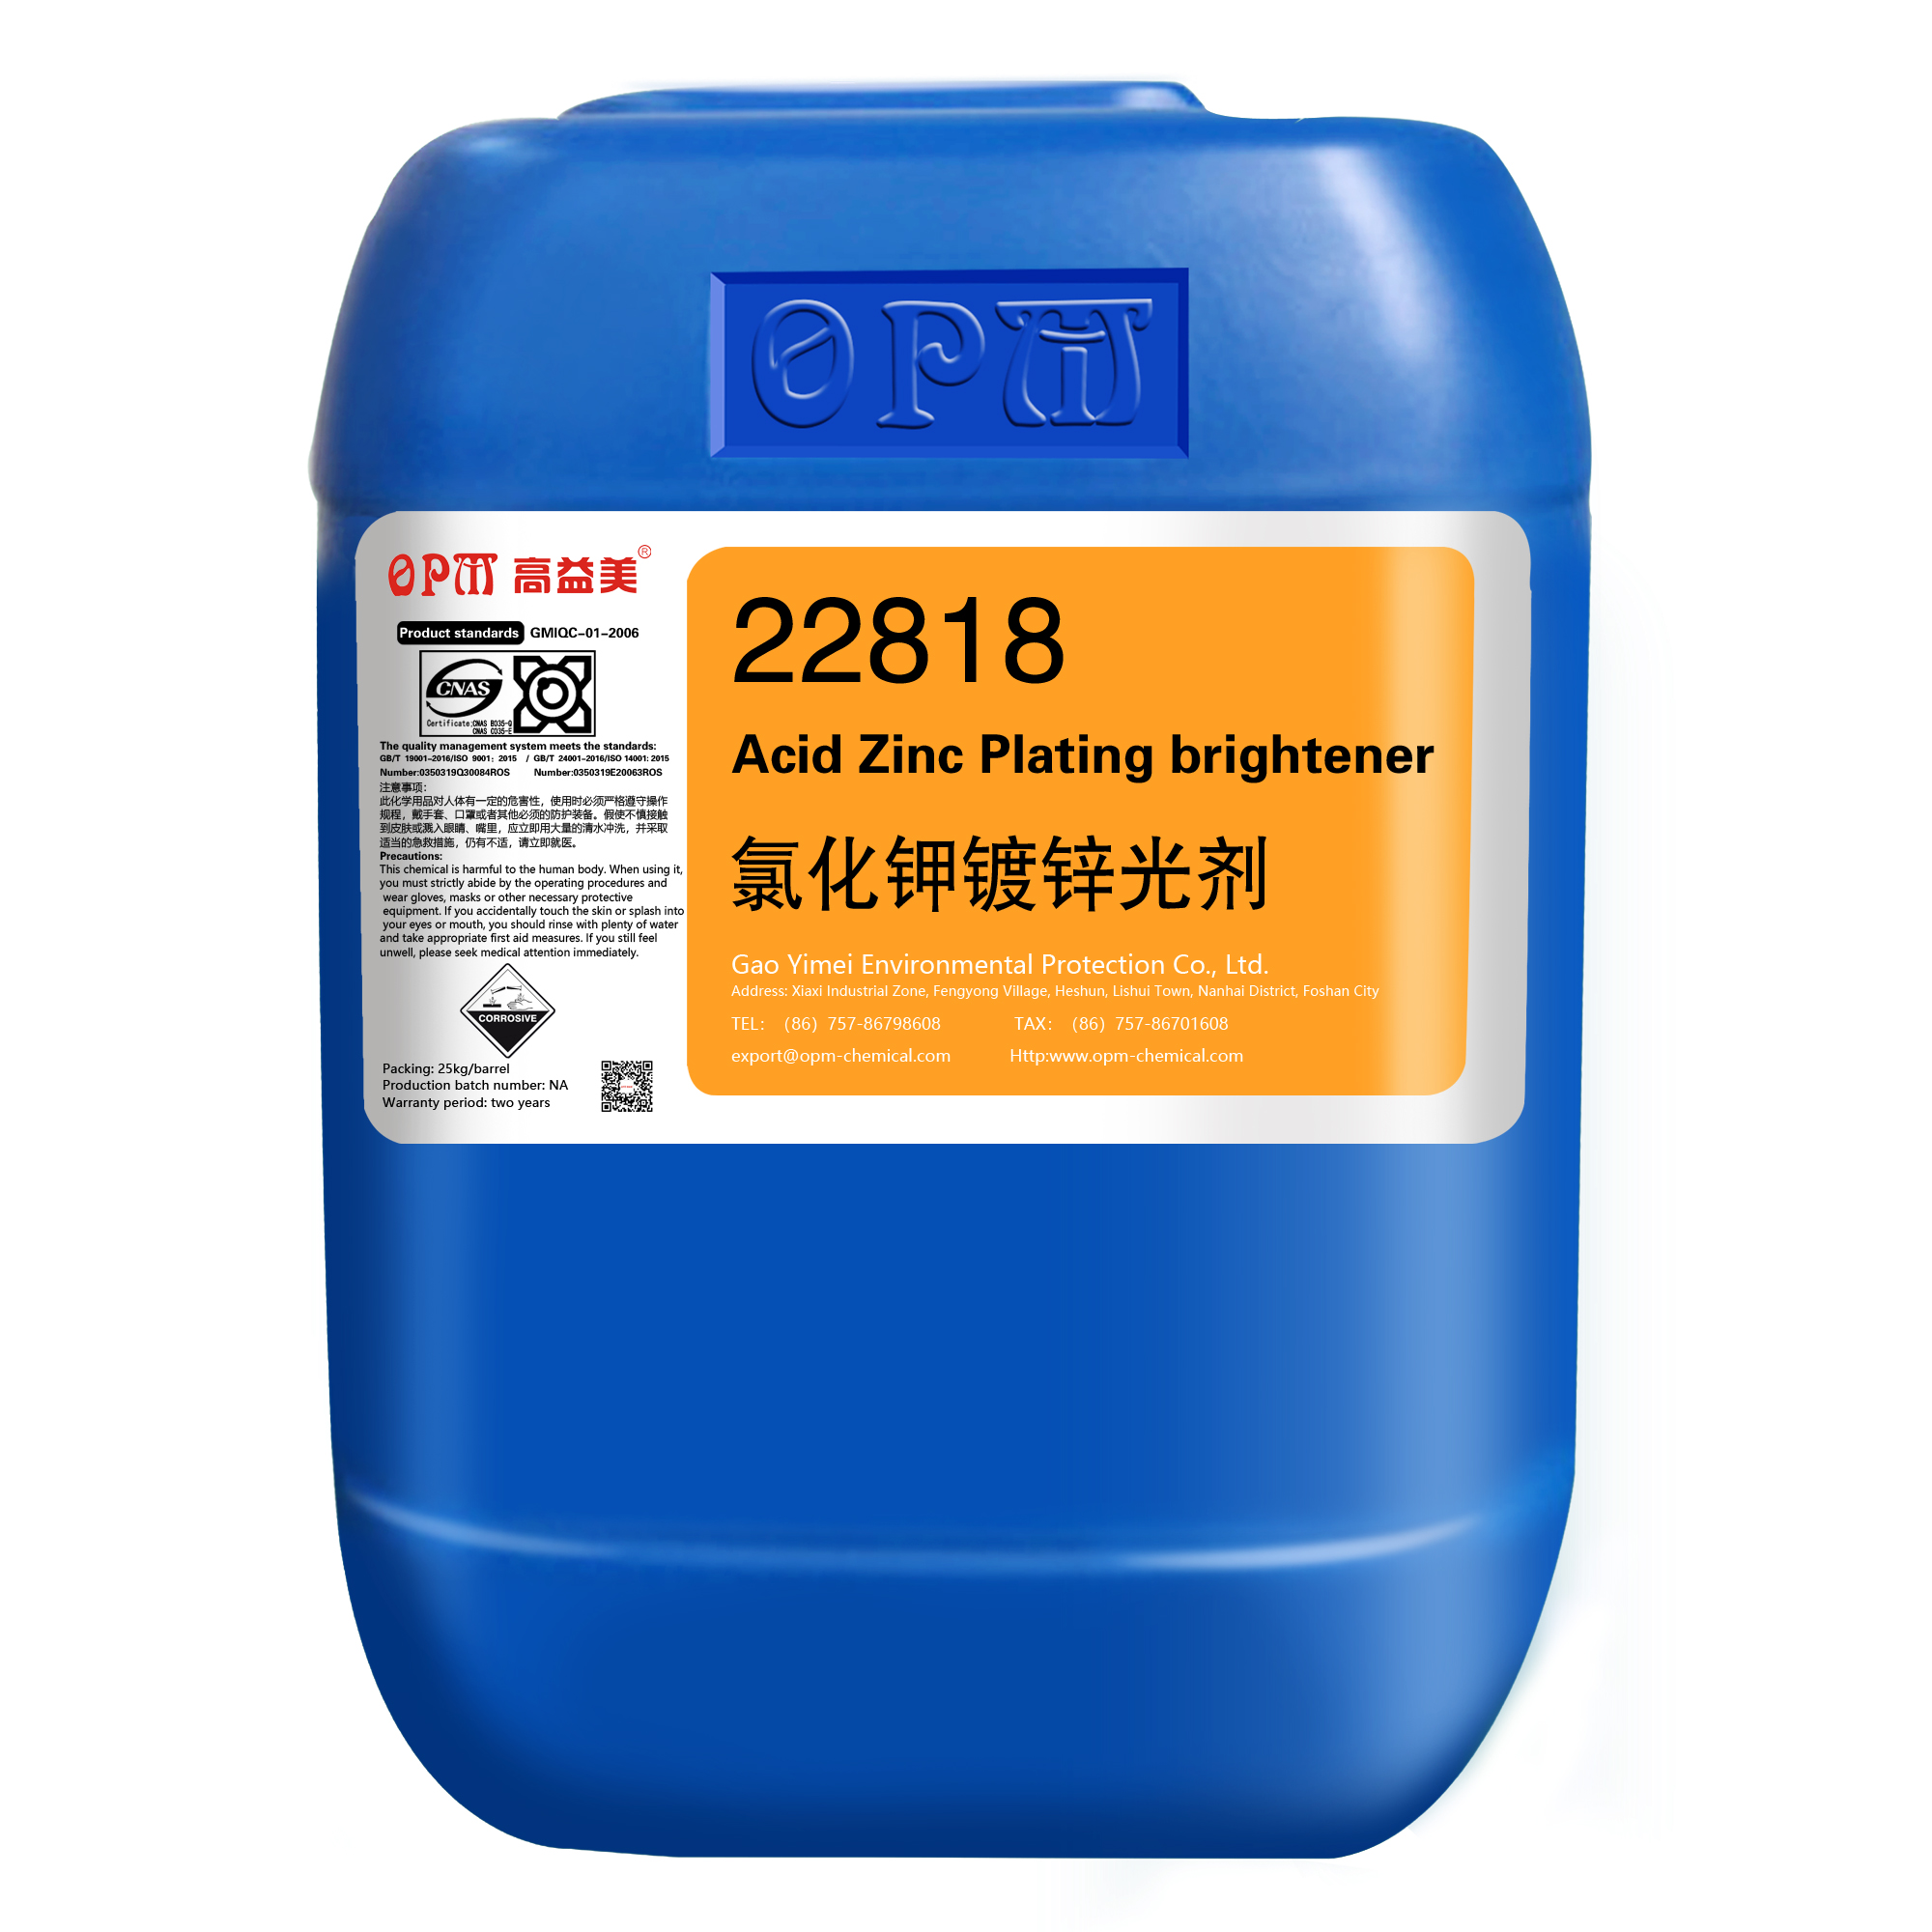 22818Acid Zinc Plating brightener